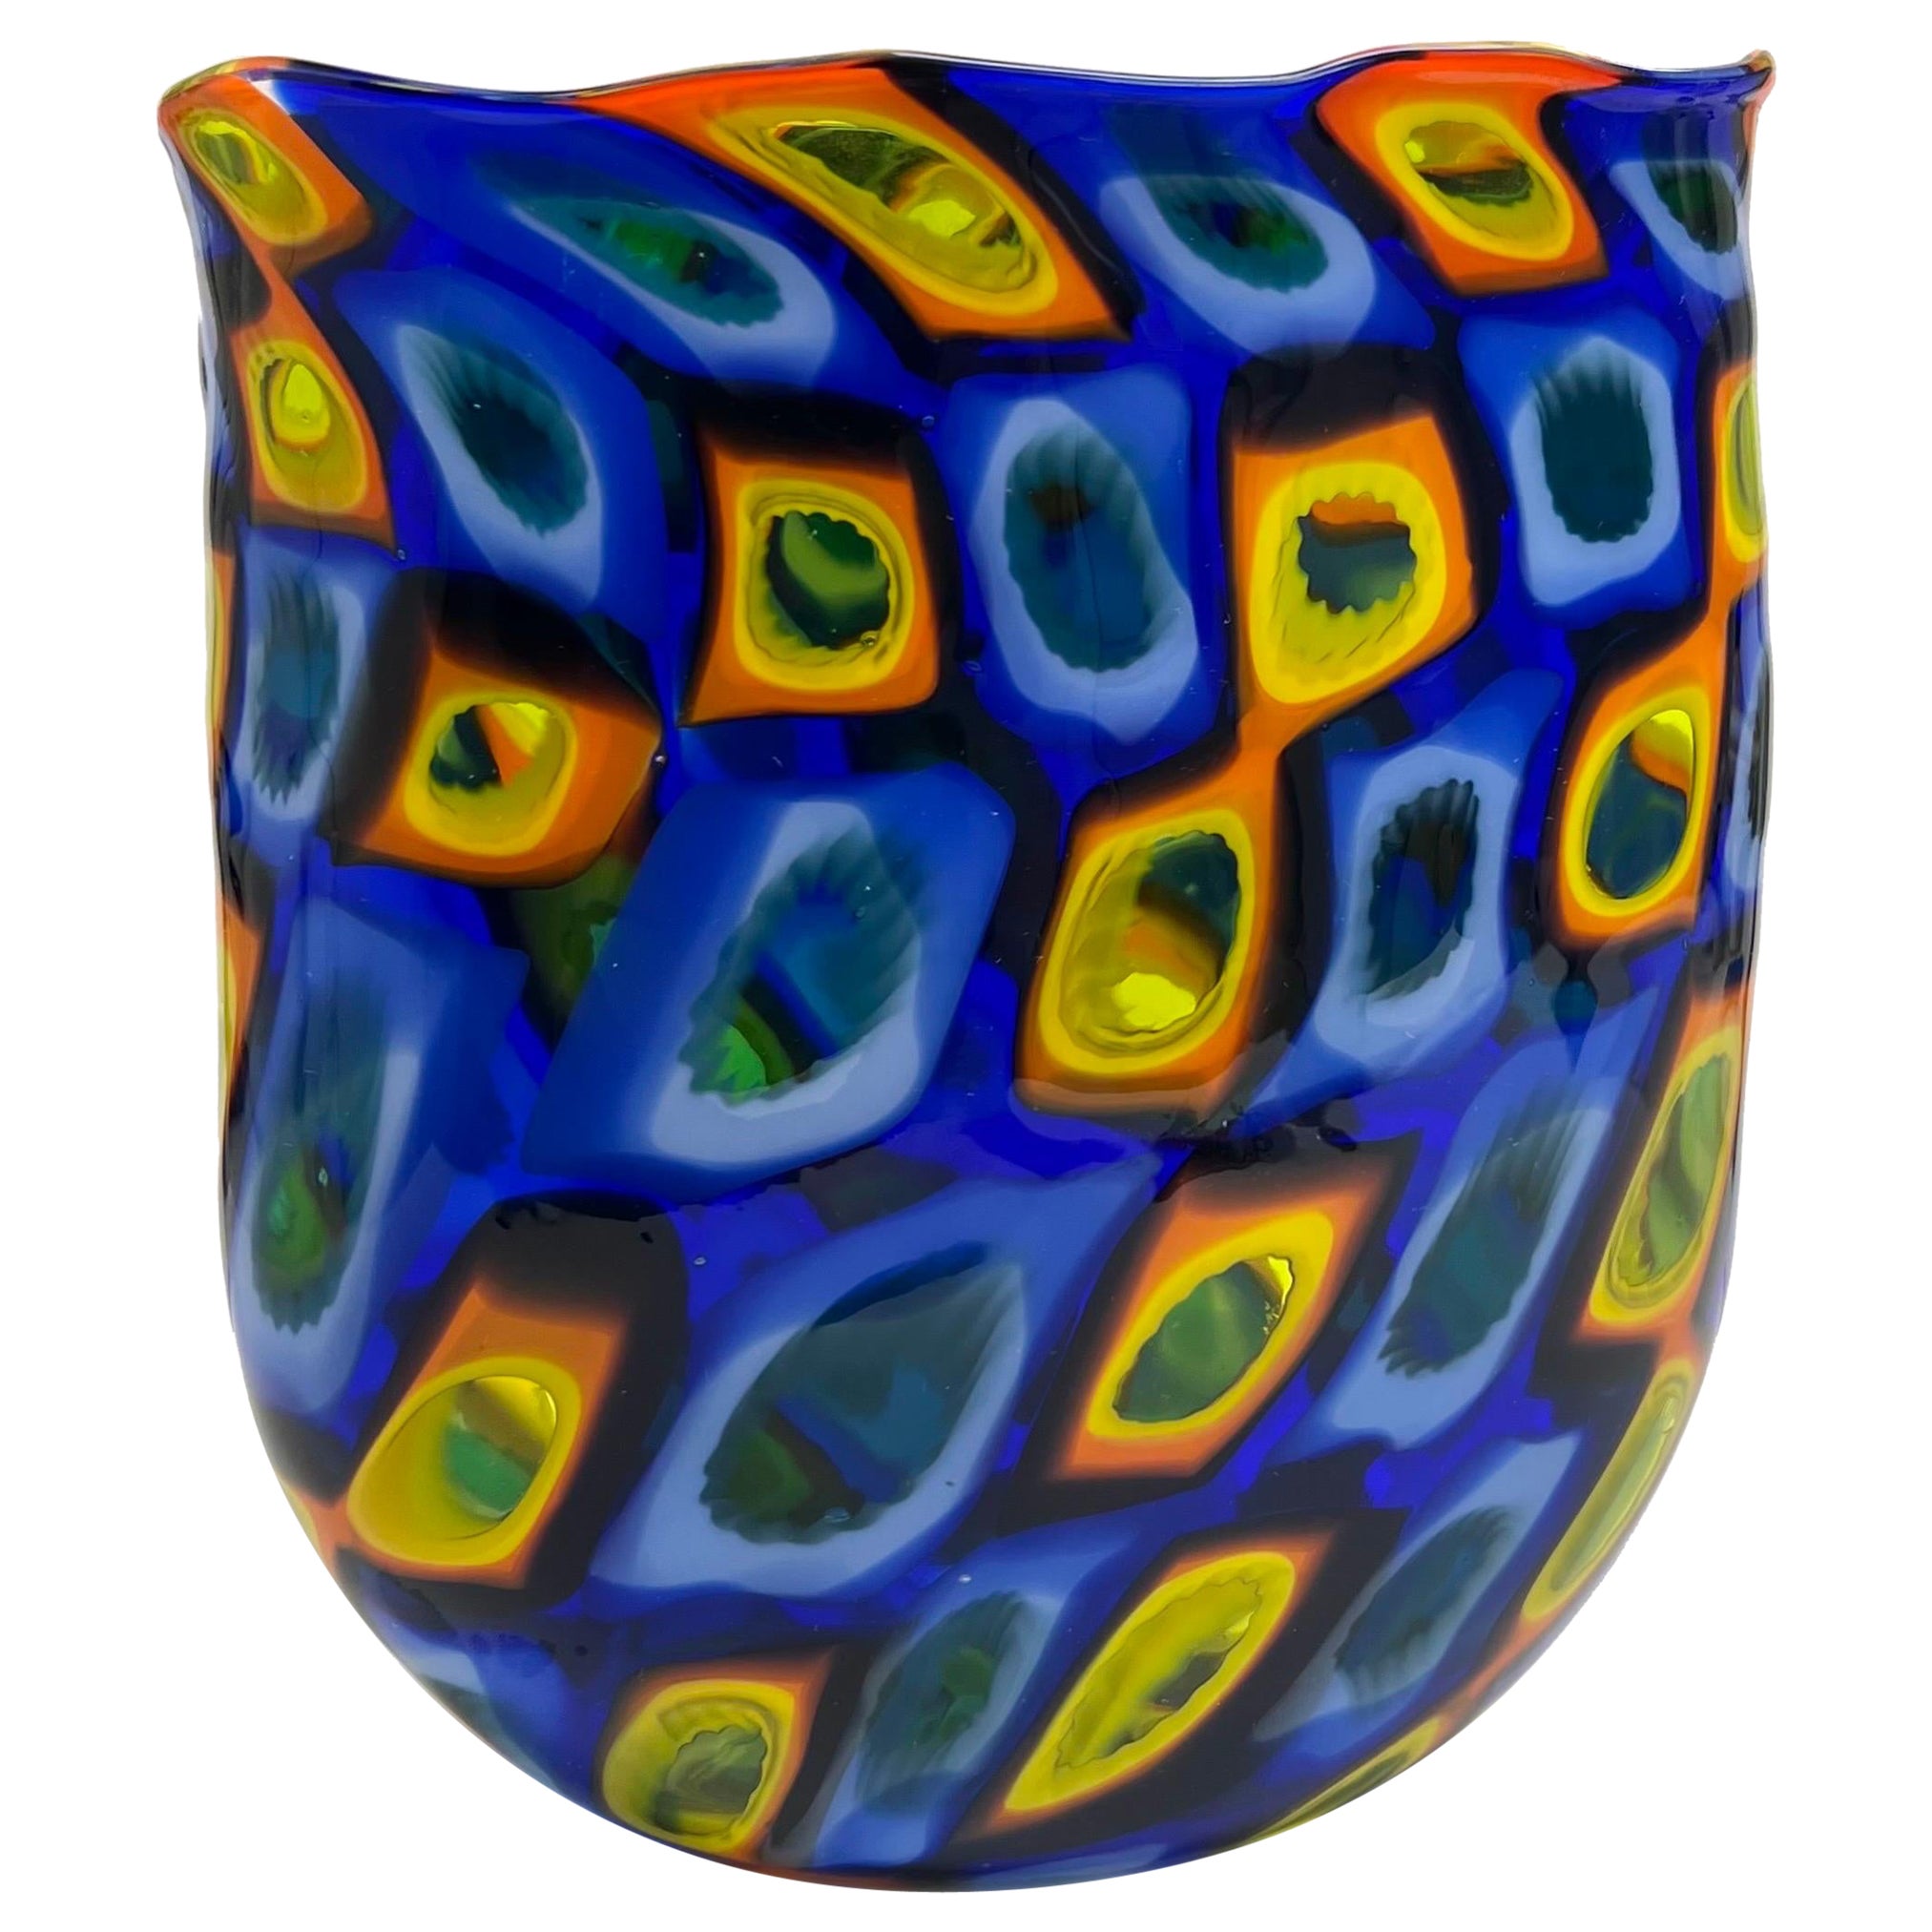 Jeremy Popelka Art Glass Murrini Vase 2001 For Sale